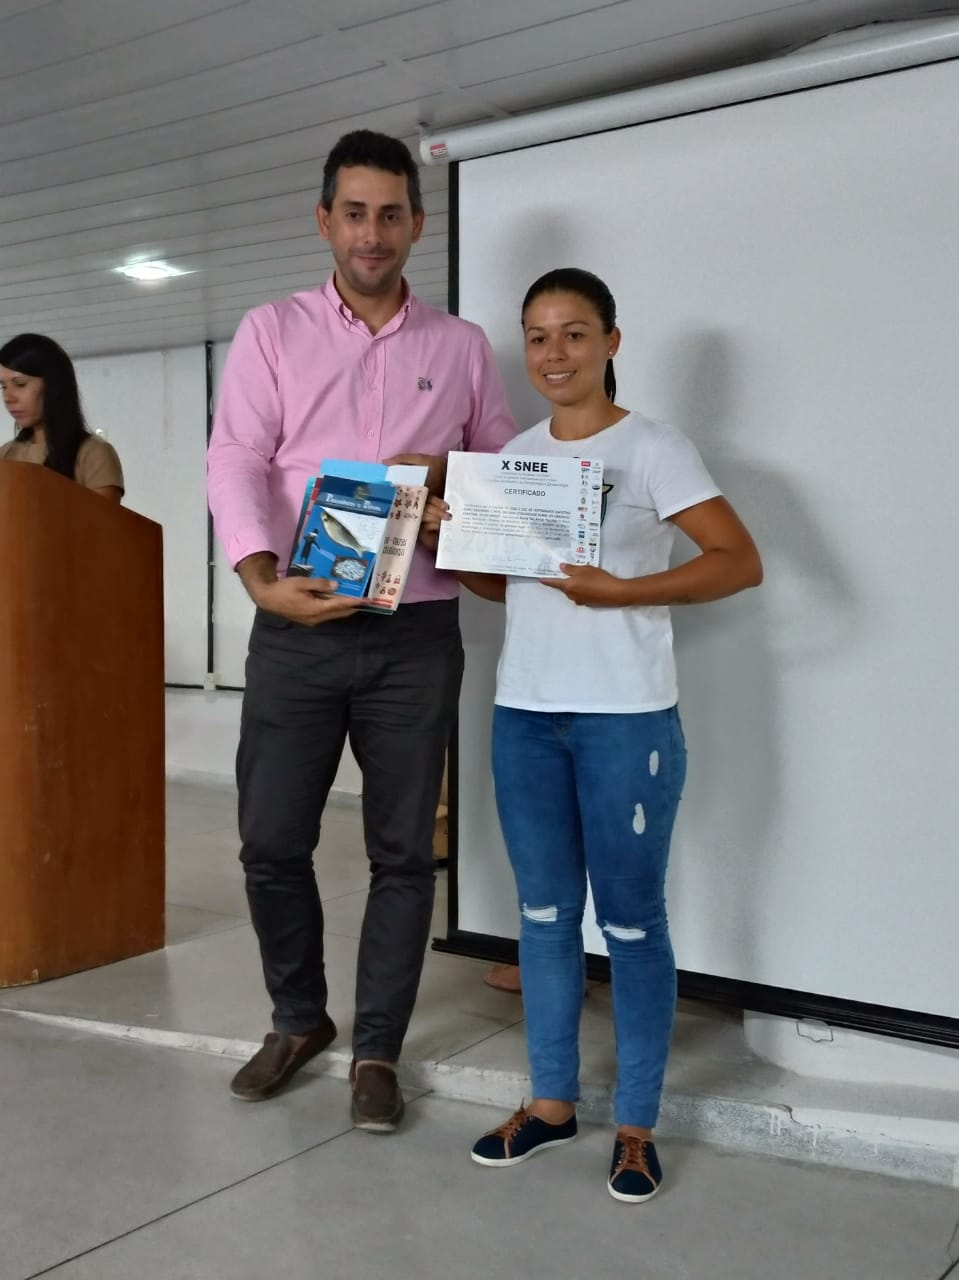 Aluna Taís Aleixo e sua orientadora, Professora Shirliane, recebendo o prêmio de melhor apresentação oral